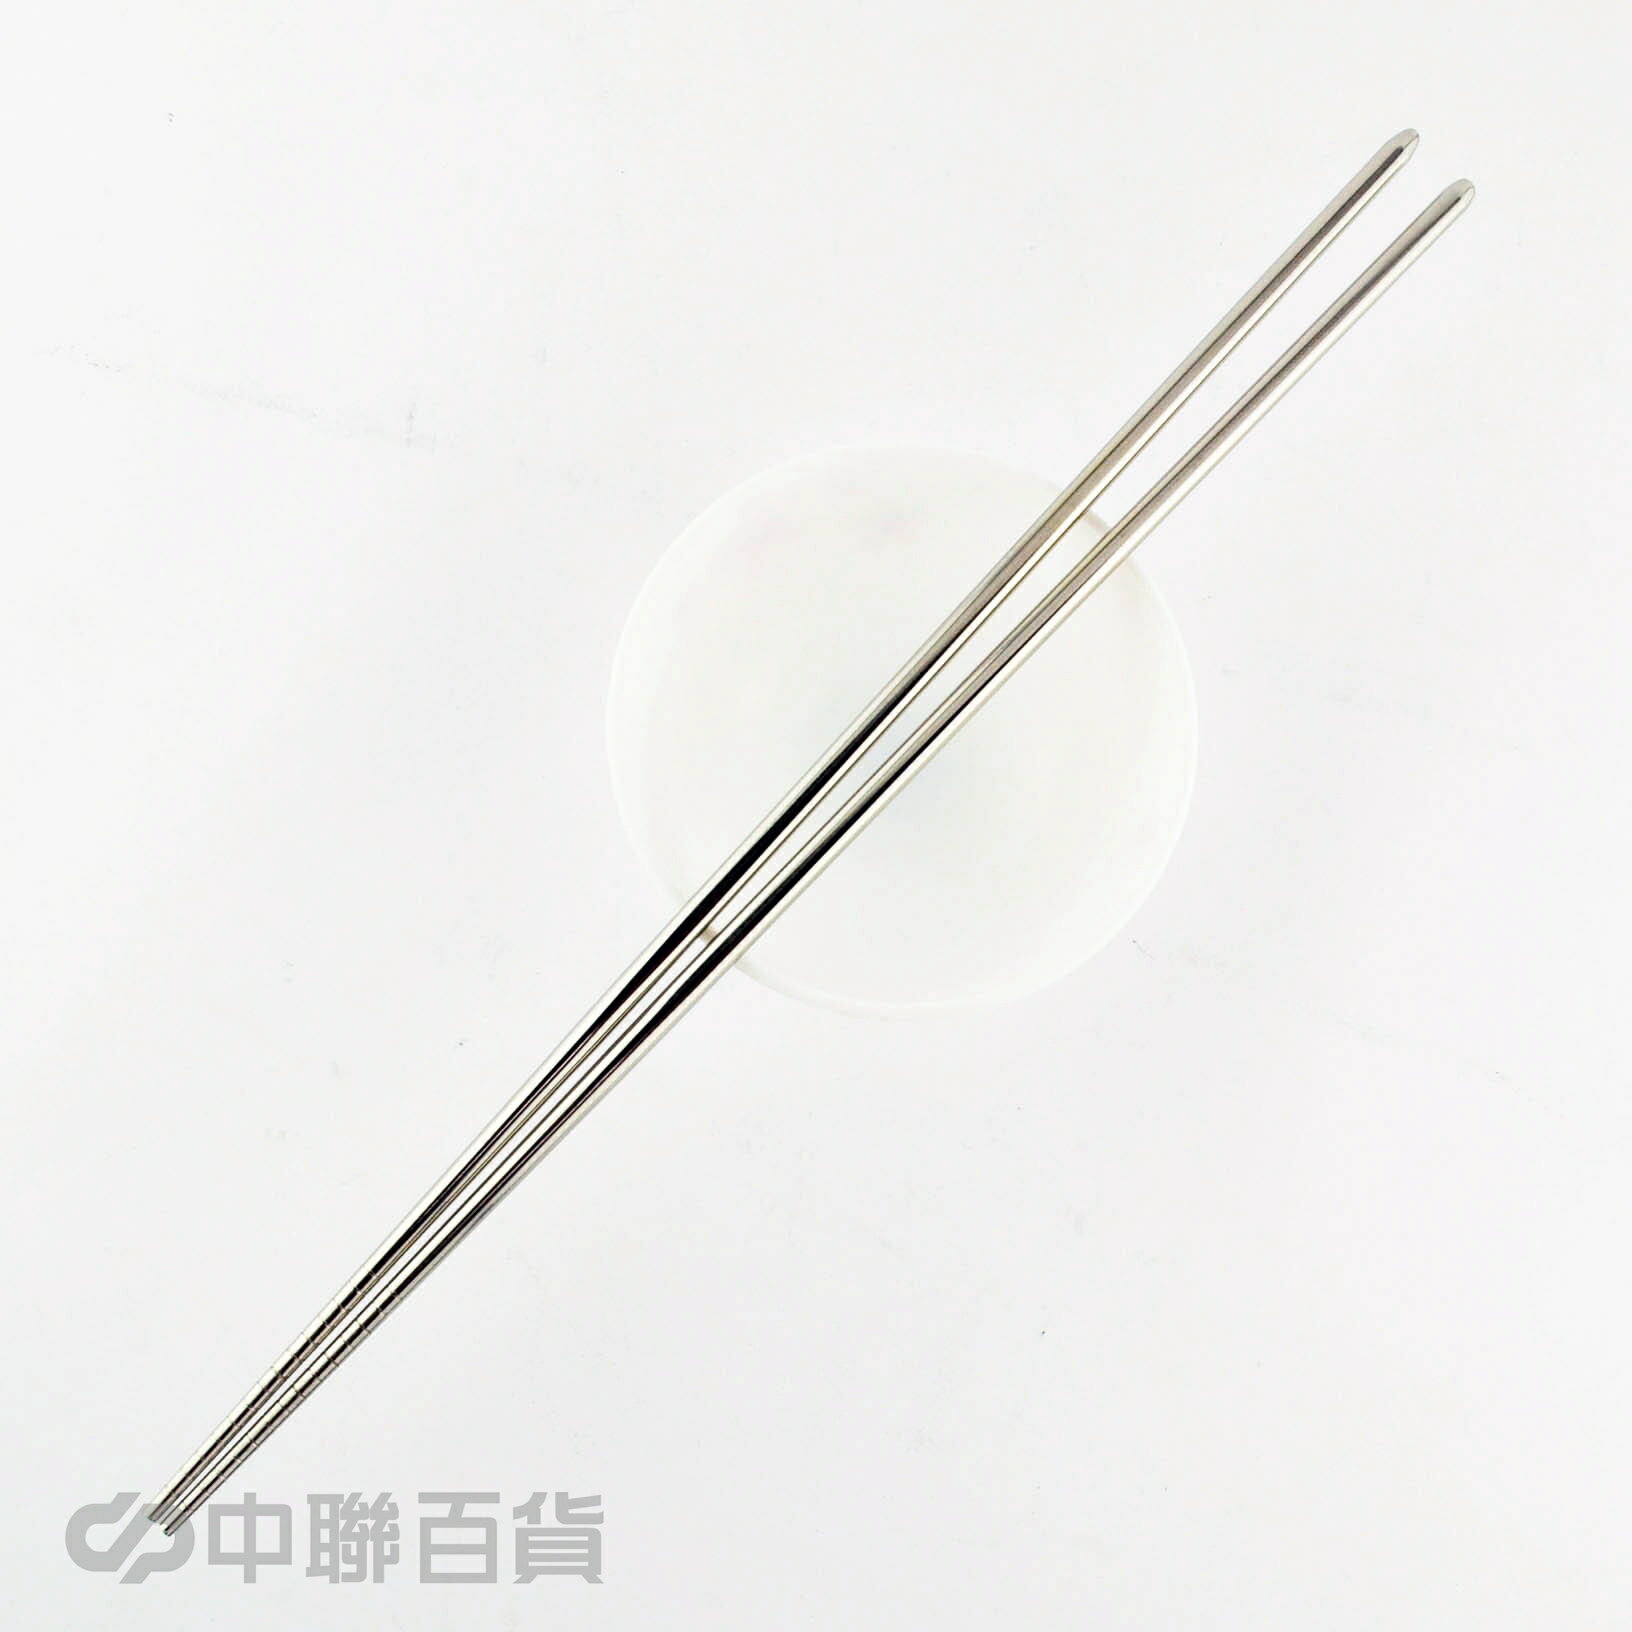 上龍#304ST調理筷(36cm)1雙 TL-2476 料理筷 料理長筷 炸物筷 調理筷 煮麵筷 拌麵筷